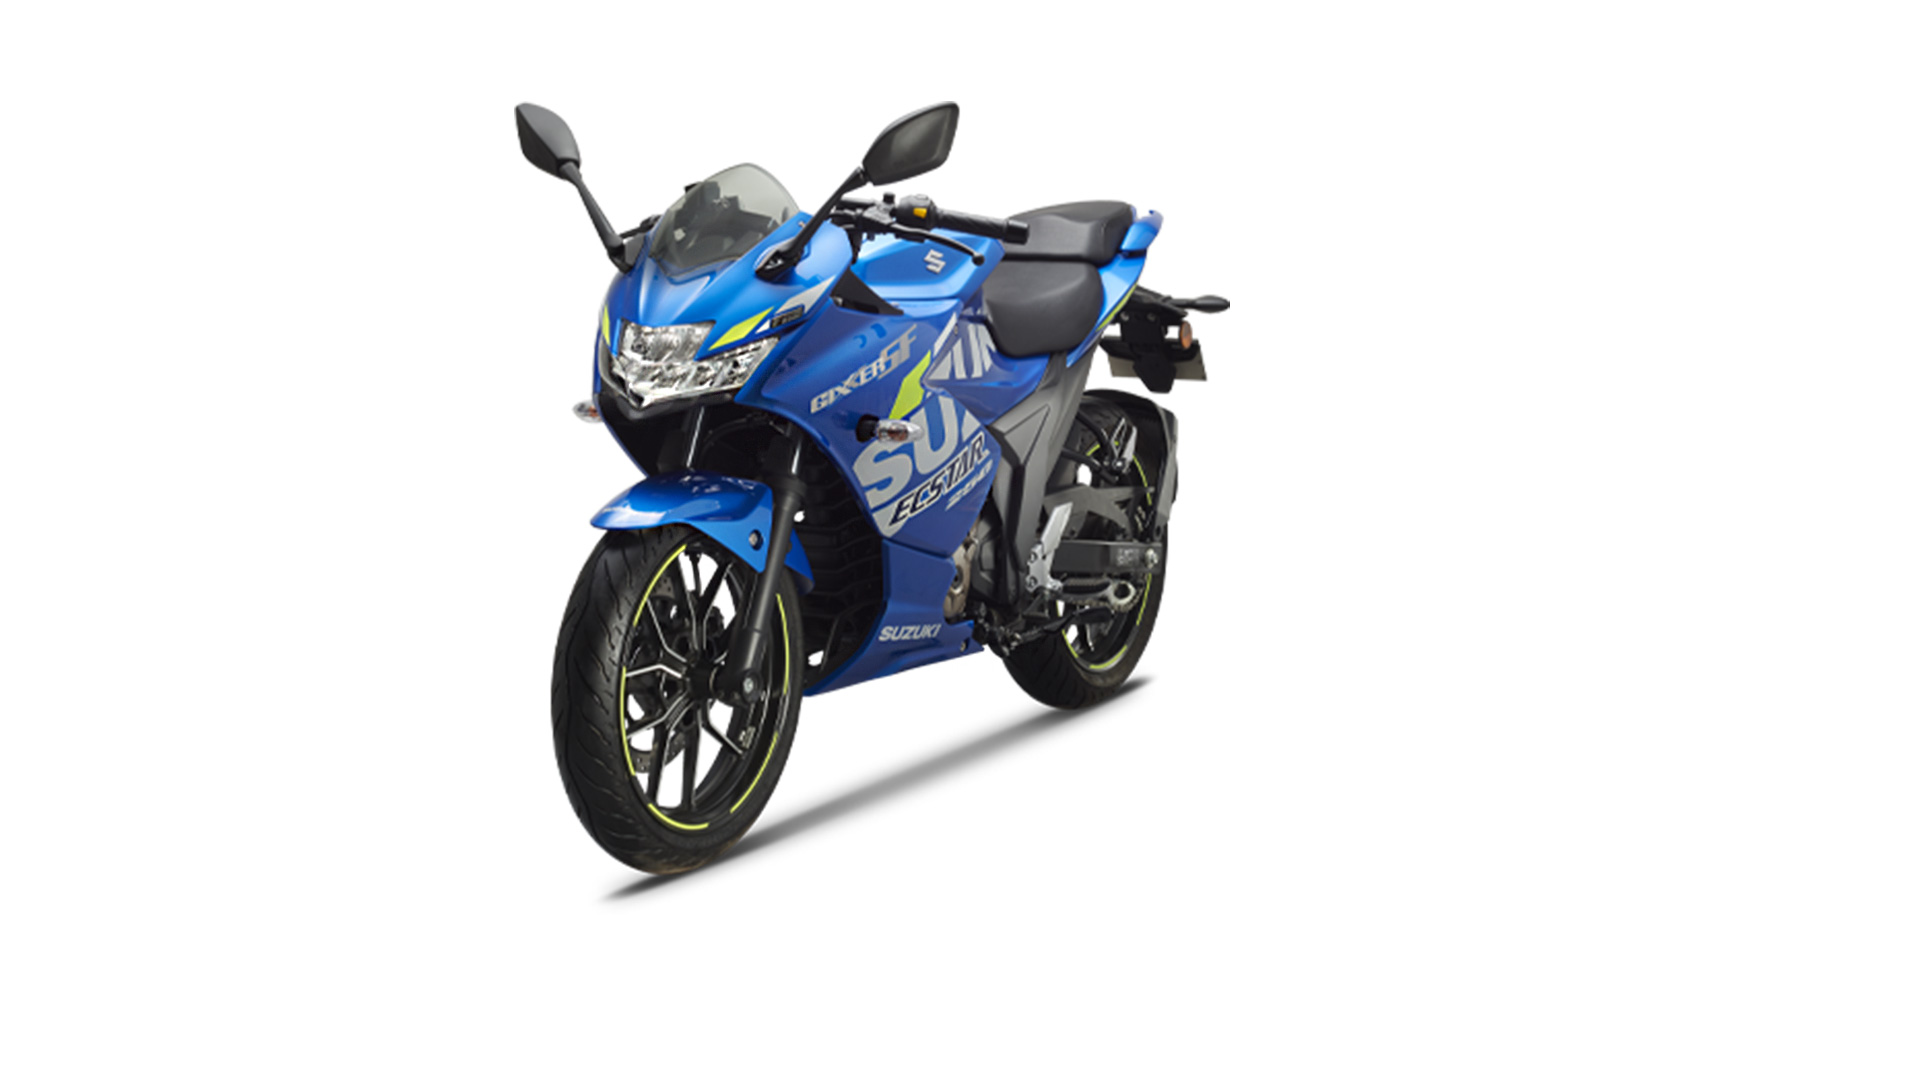 Suzuki Gixxer SF 250 2020 MotoGP Edition